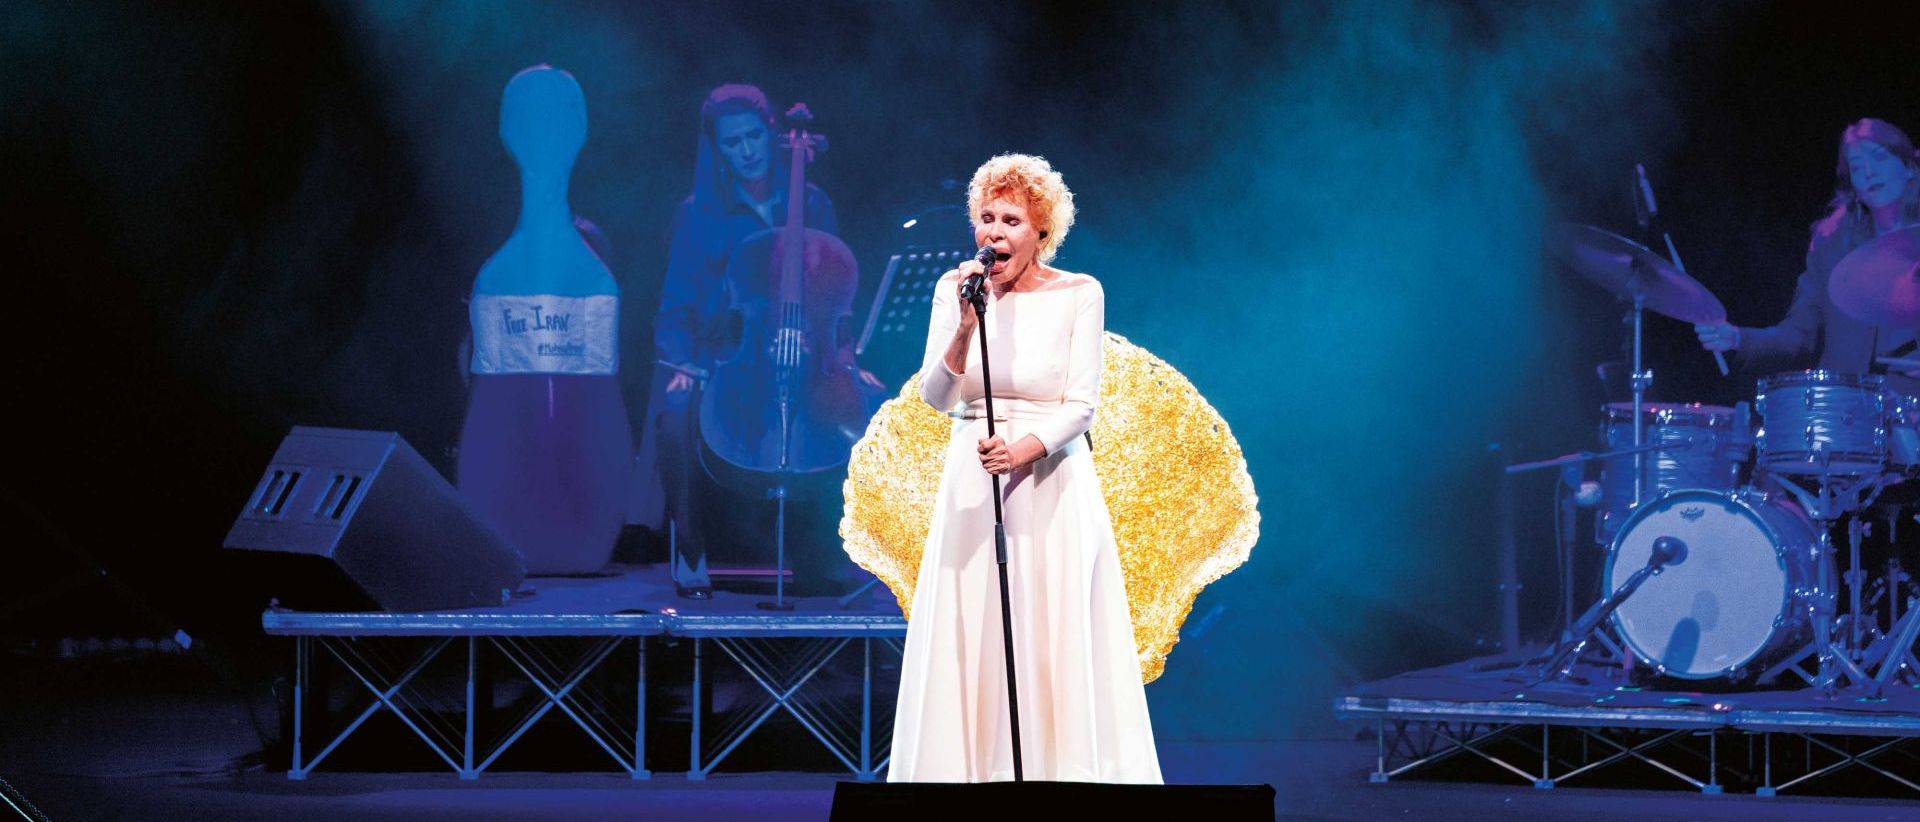  Ornella Vanoni insieme alla poltrona Margherita sul palco dei concerti “Le donne e la musica”, importante tour italiano tra il 2022 e 2023. 